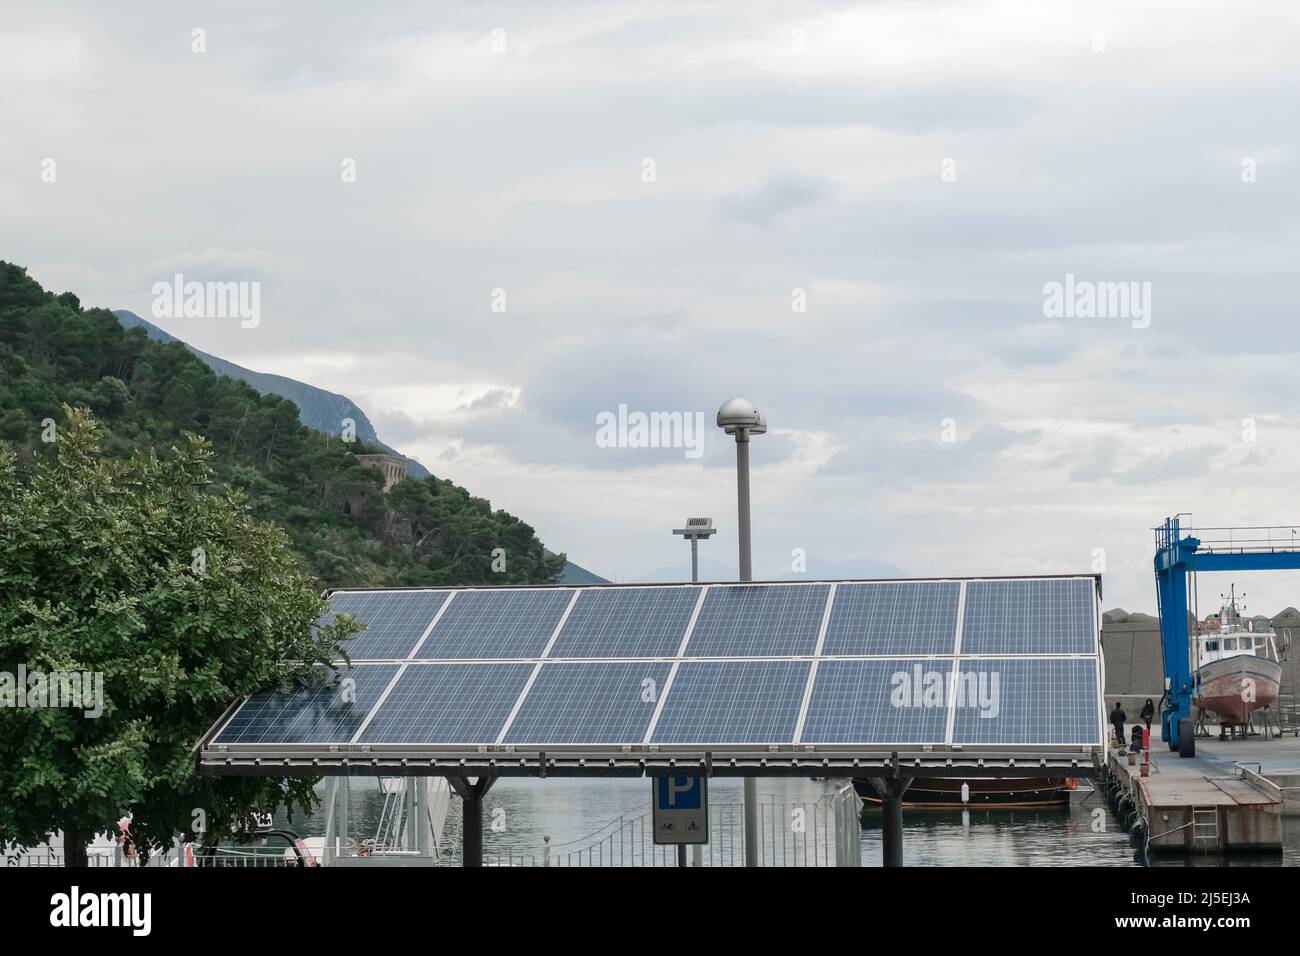 Paneles de energía fotovoltaica instalados en la zona de aparcamiento, tecnología verde renovable Foto de stock